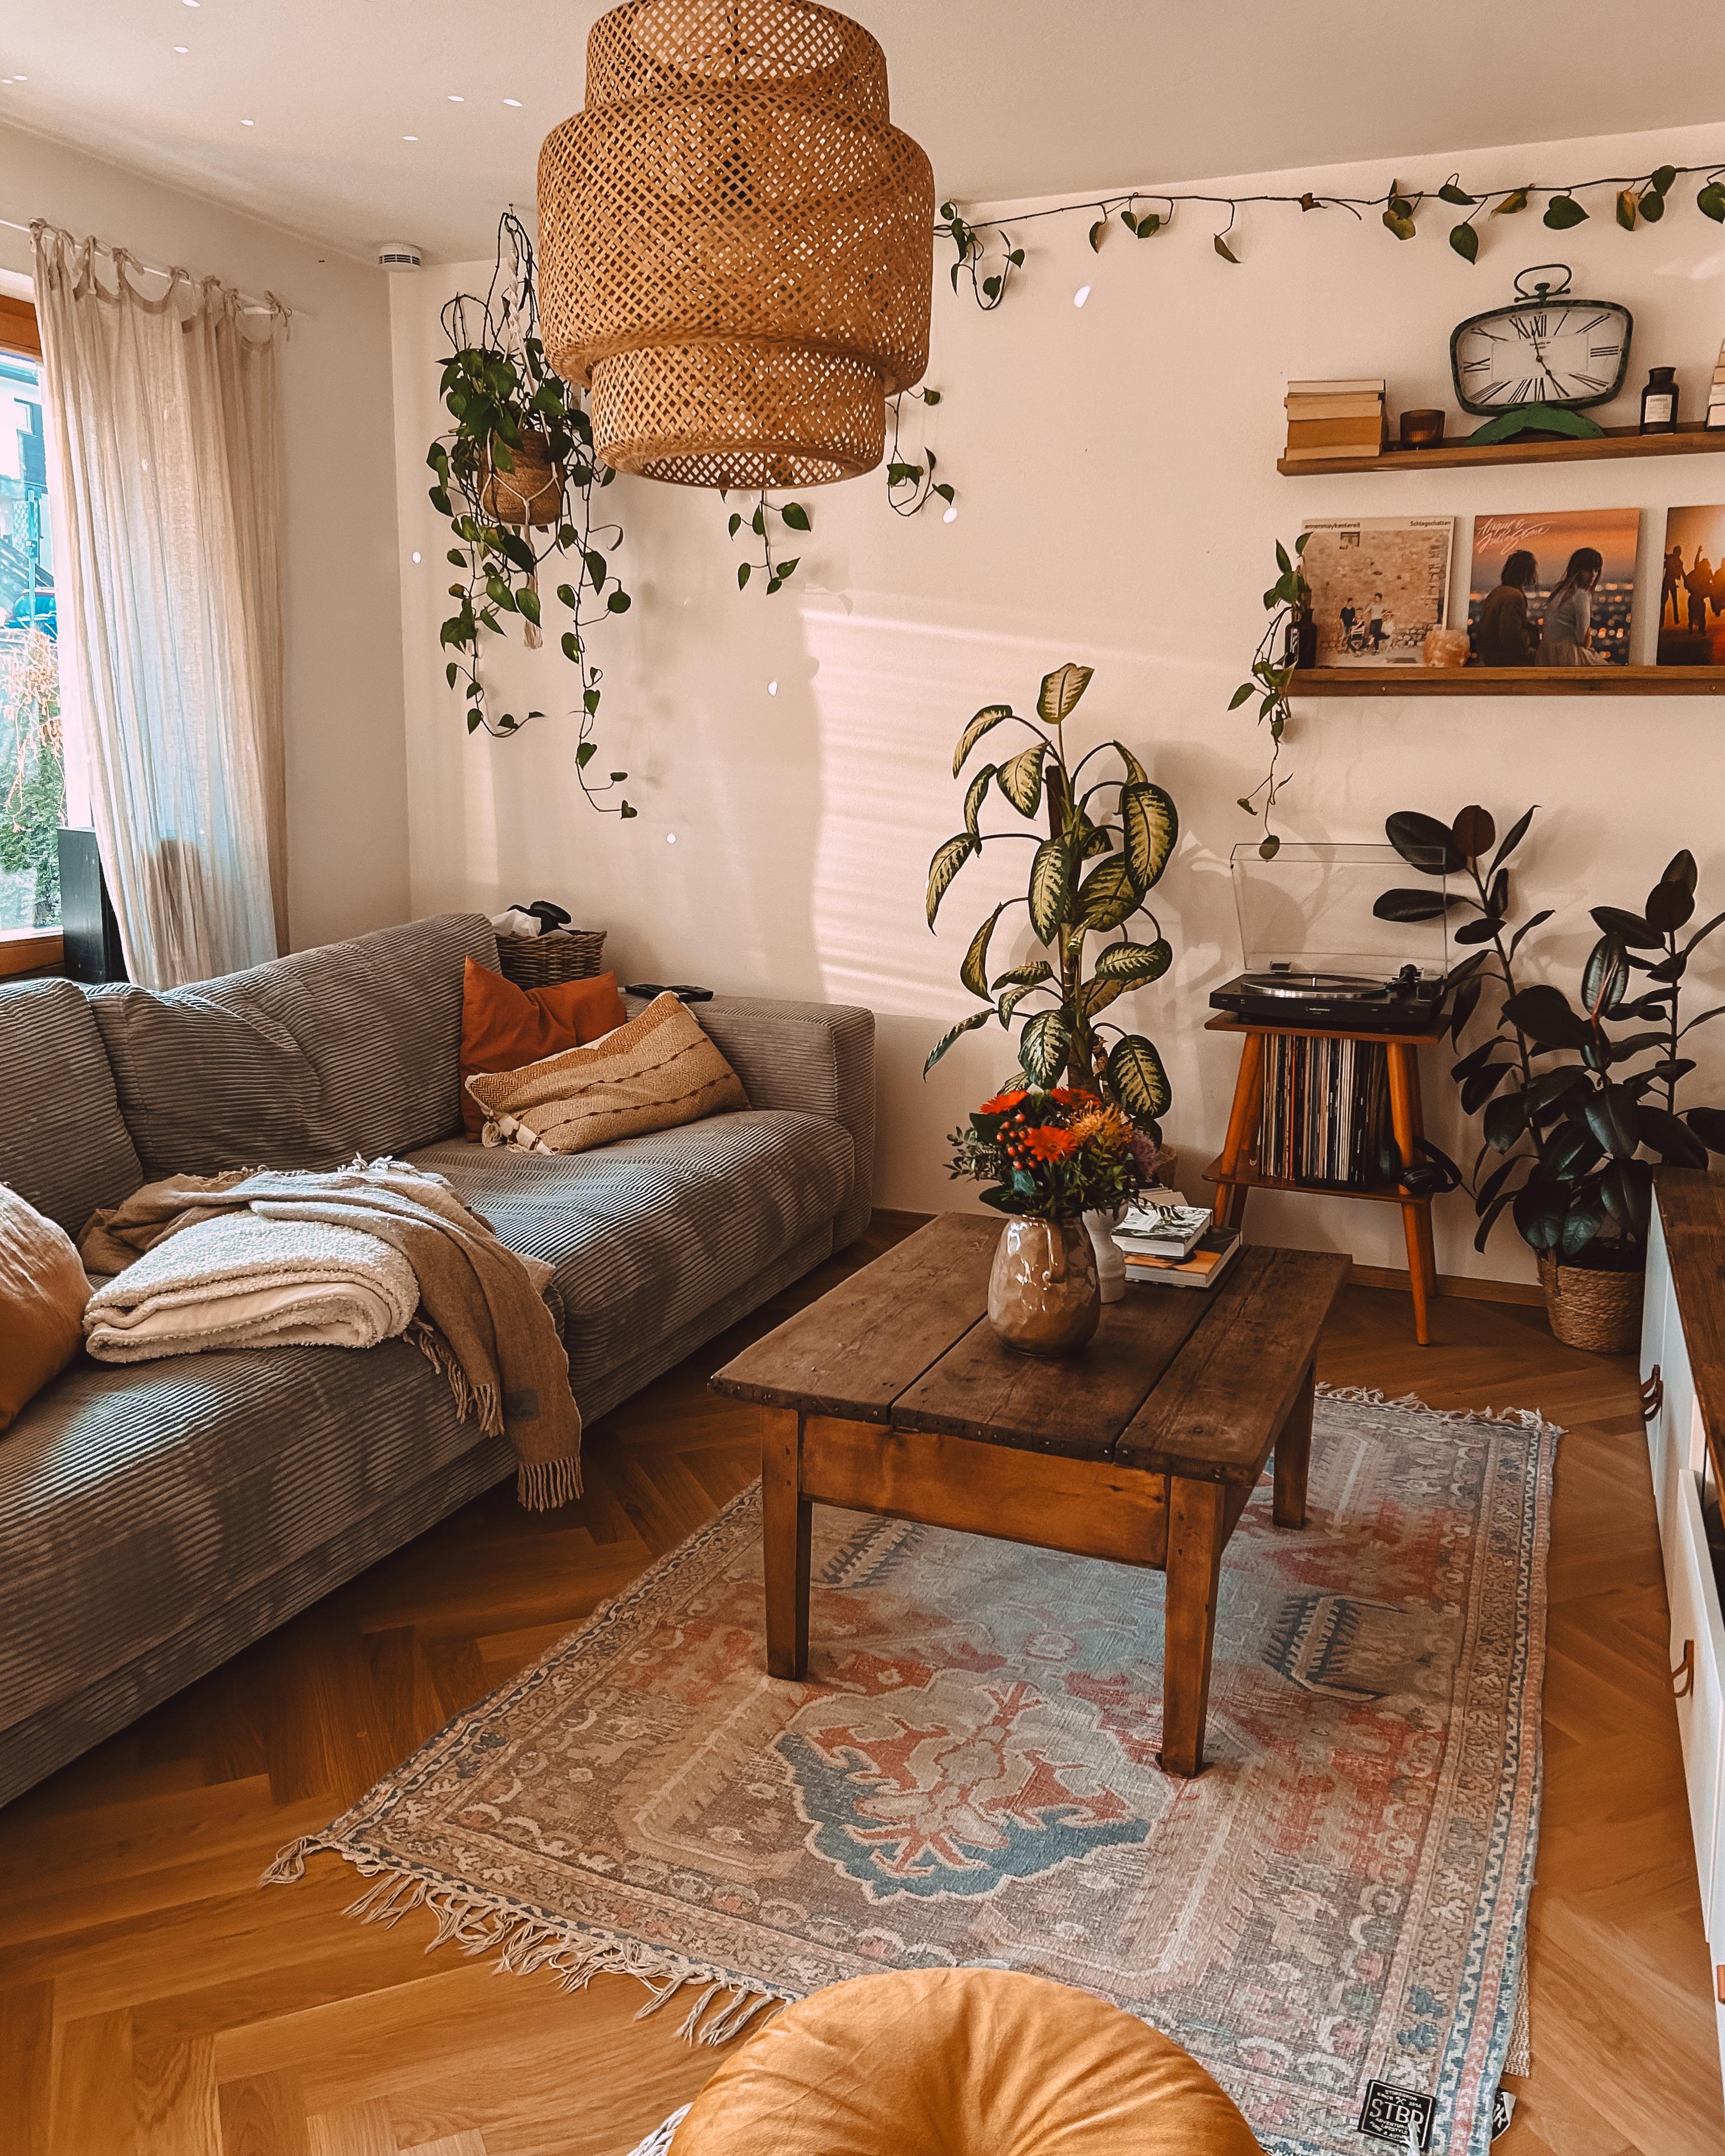 #wohnzimmer #couch #sofa #cordsofa #boho #pflanzen #teppich #couchtisch #vinyl #lp #plattenspieler